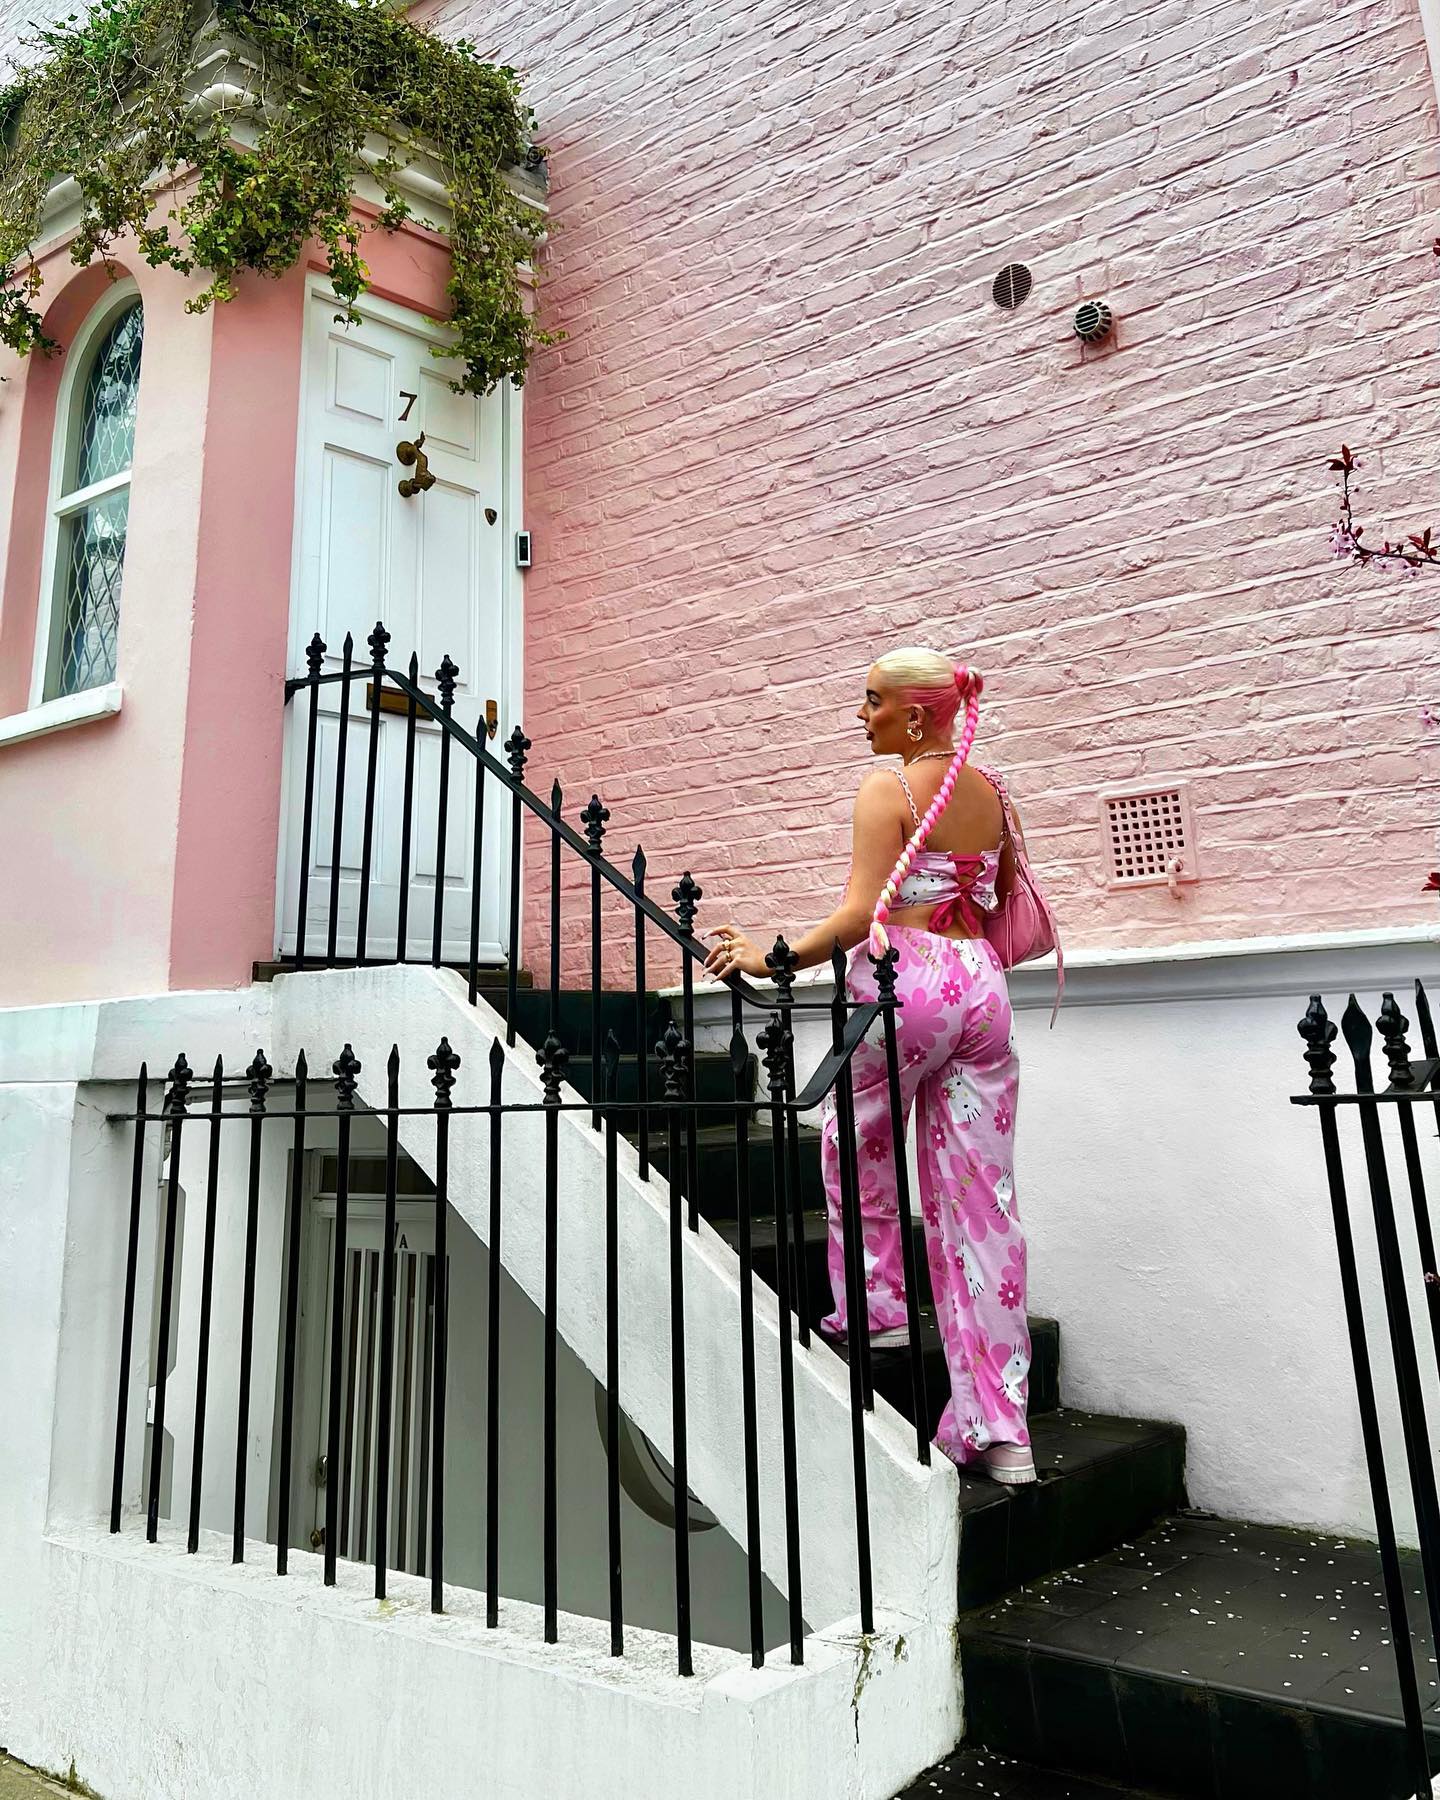 Poser machen Fotos auf seinen Stufen und vor seinen rosa gestrichenen Wänden